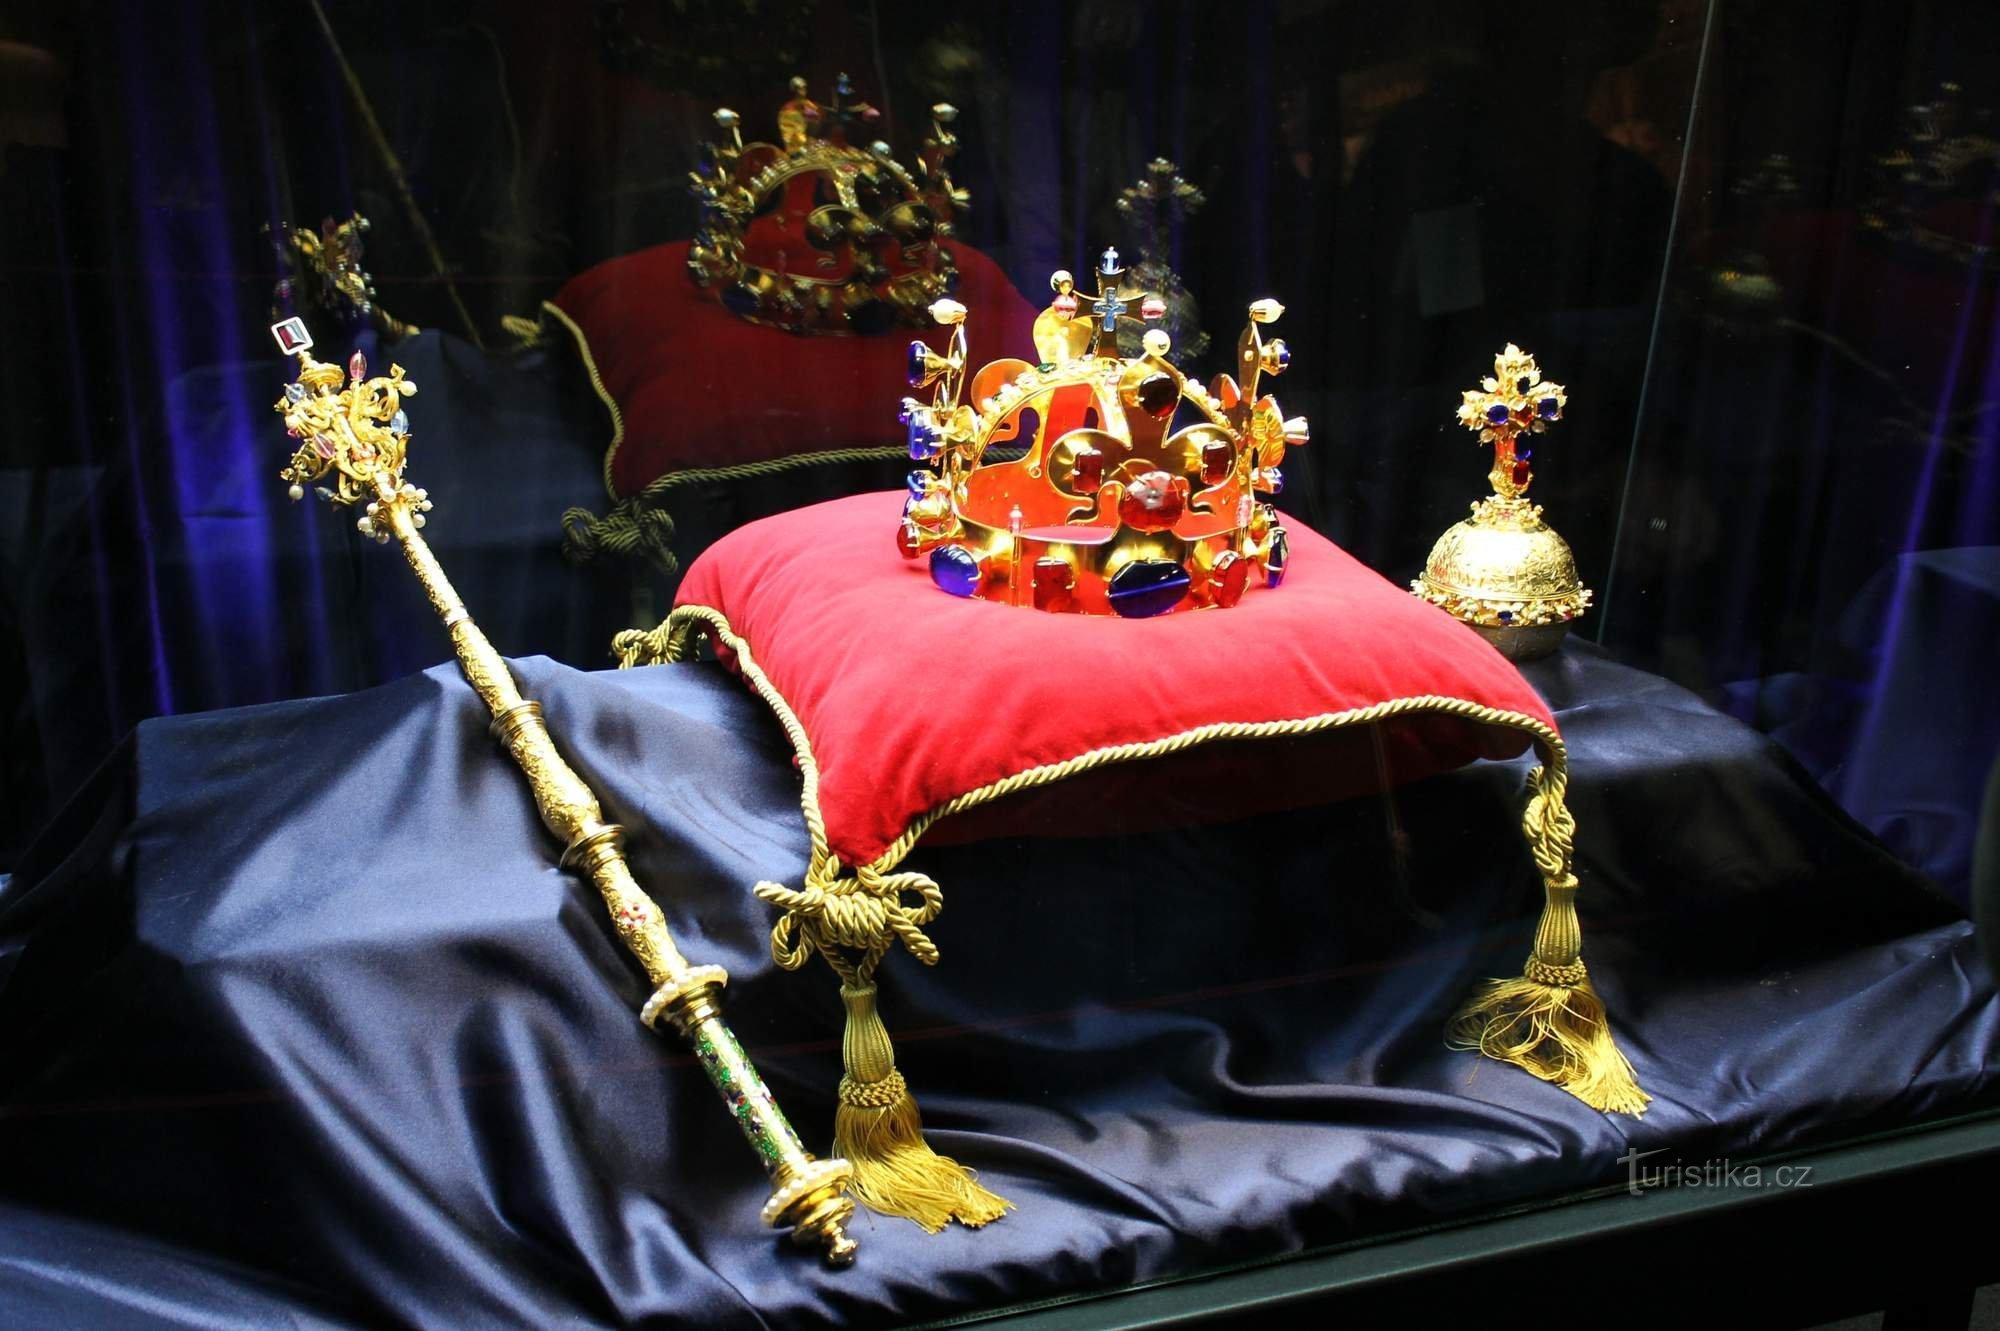 Mostra dei gioielli della corona ceca facilmente raggiungibile al castello di Hrubá Skála